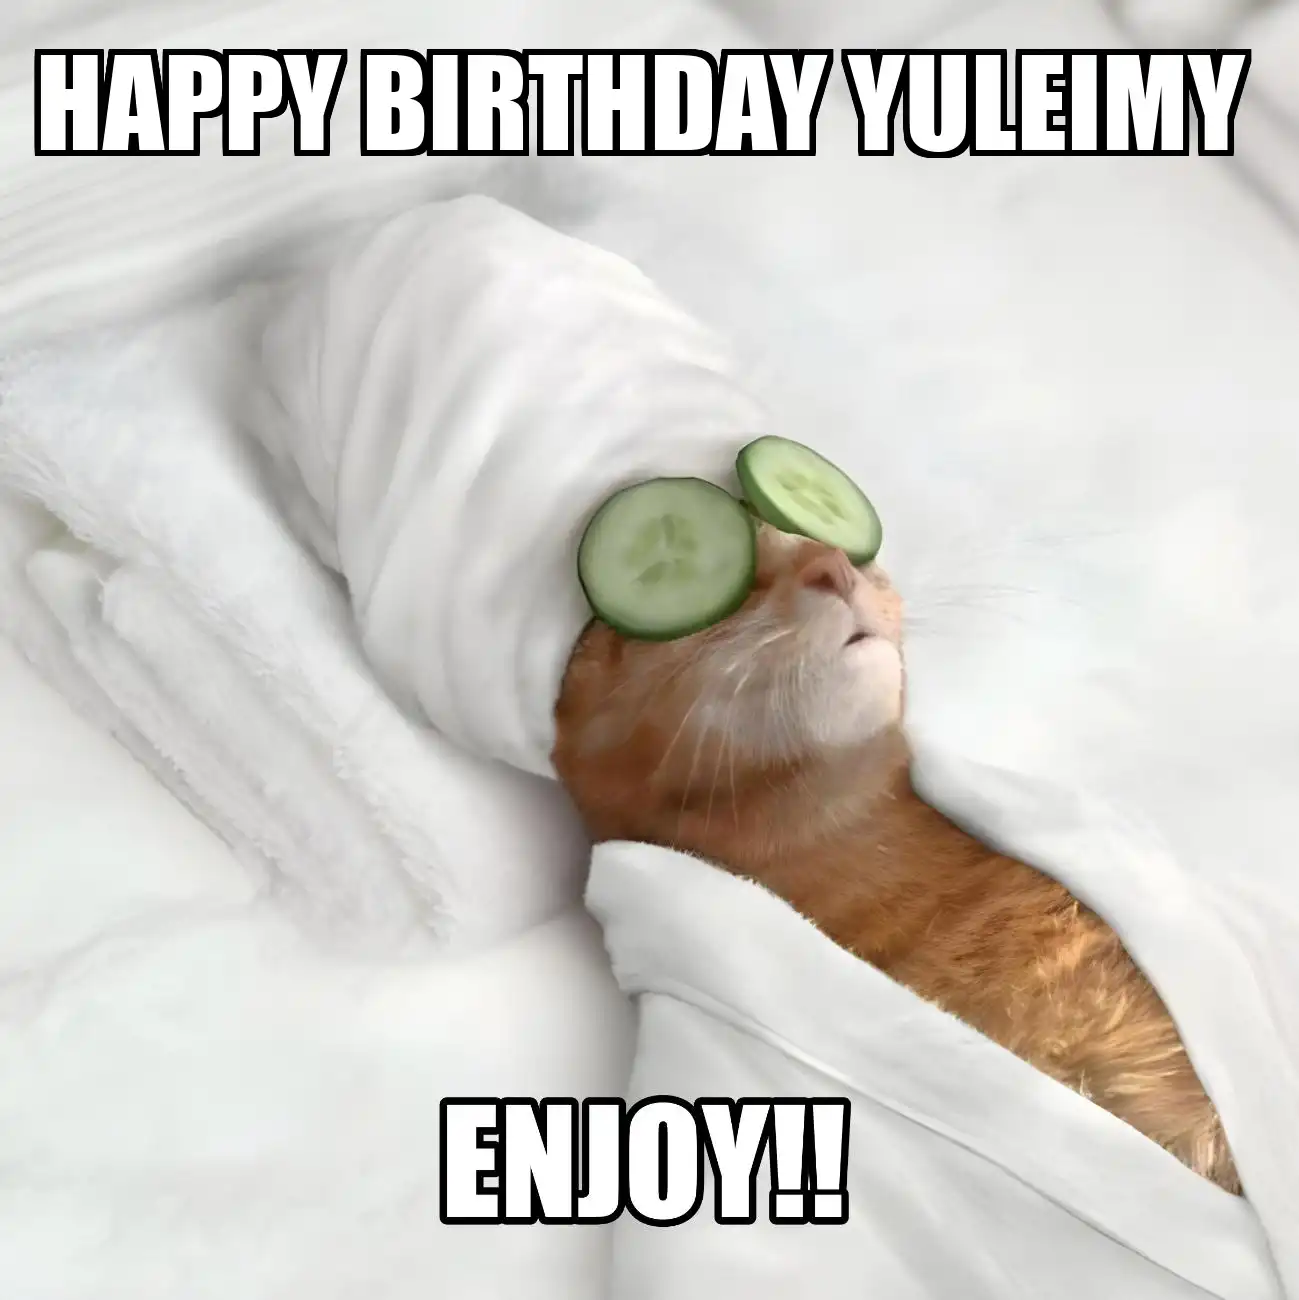 Happy Birthday Yuleimy Enjoy Cat Meme